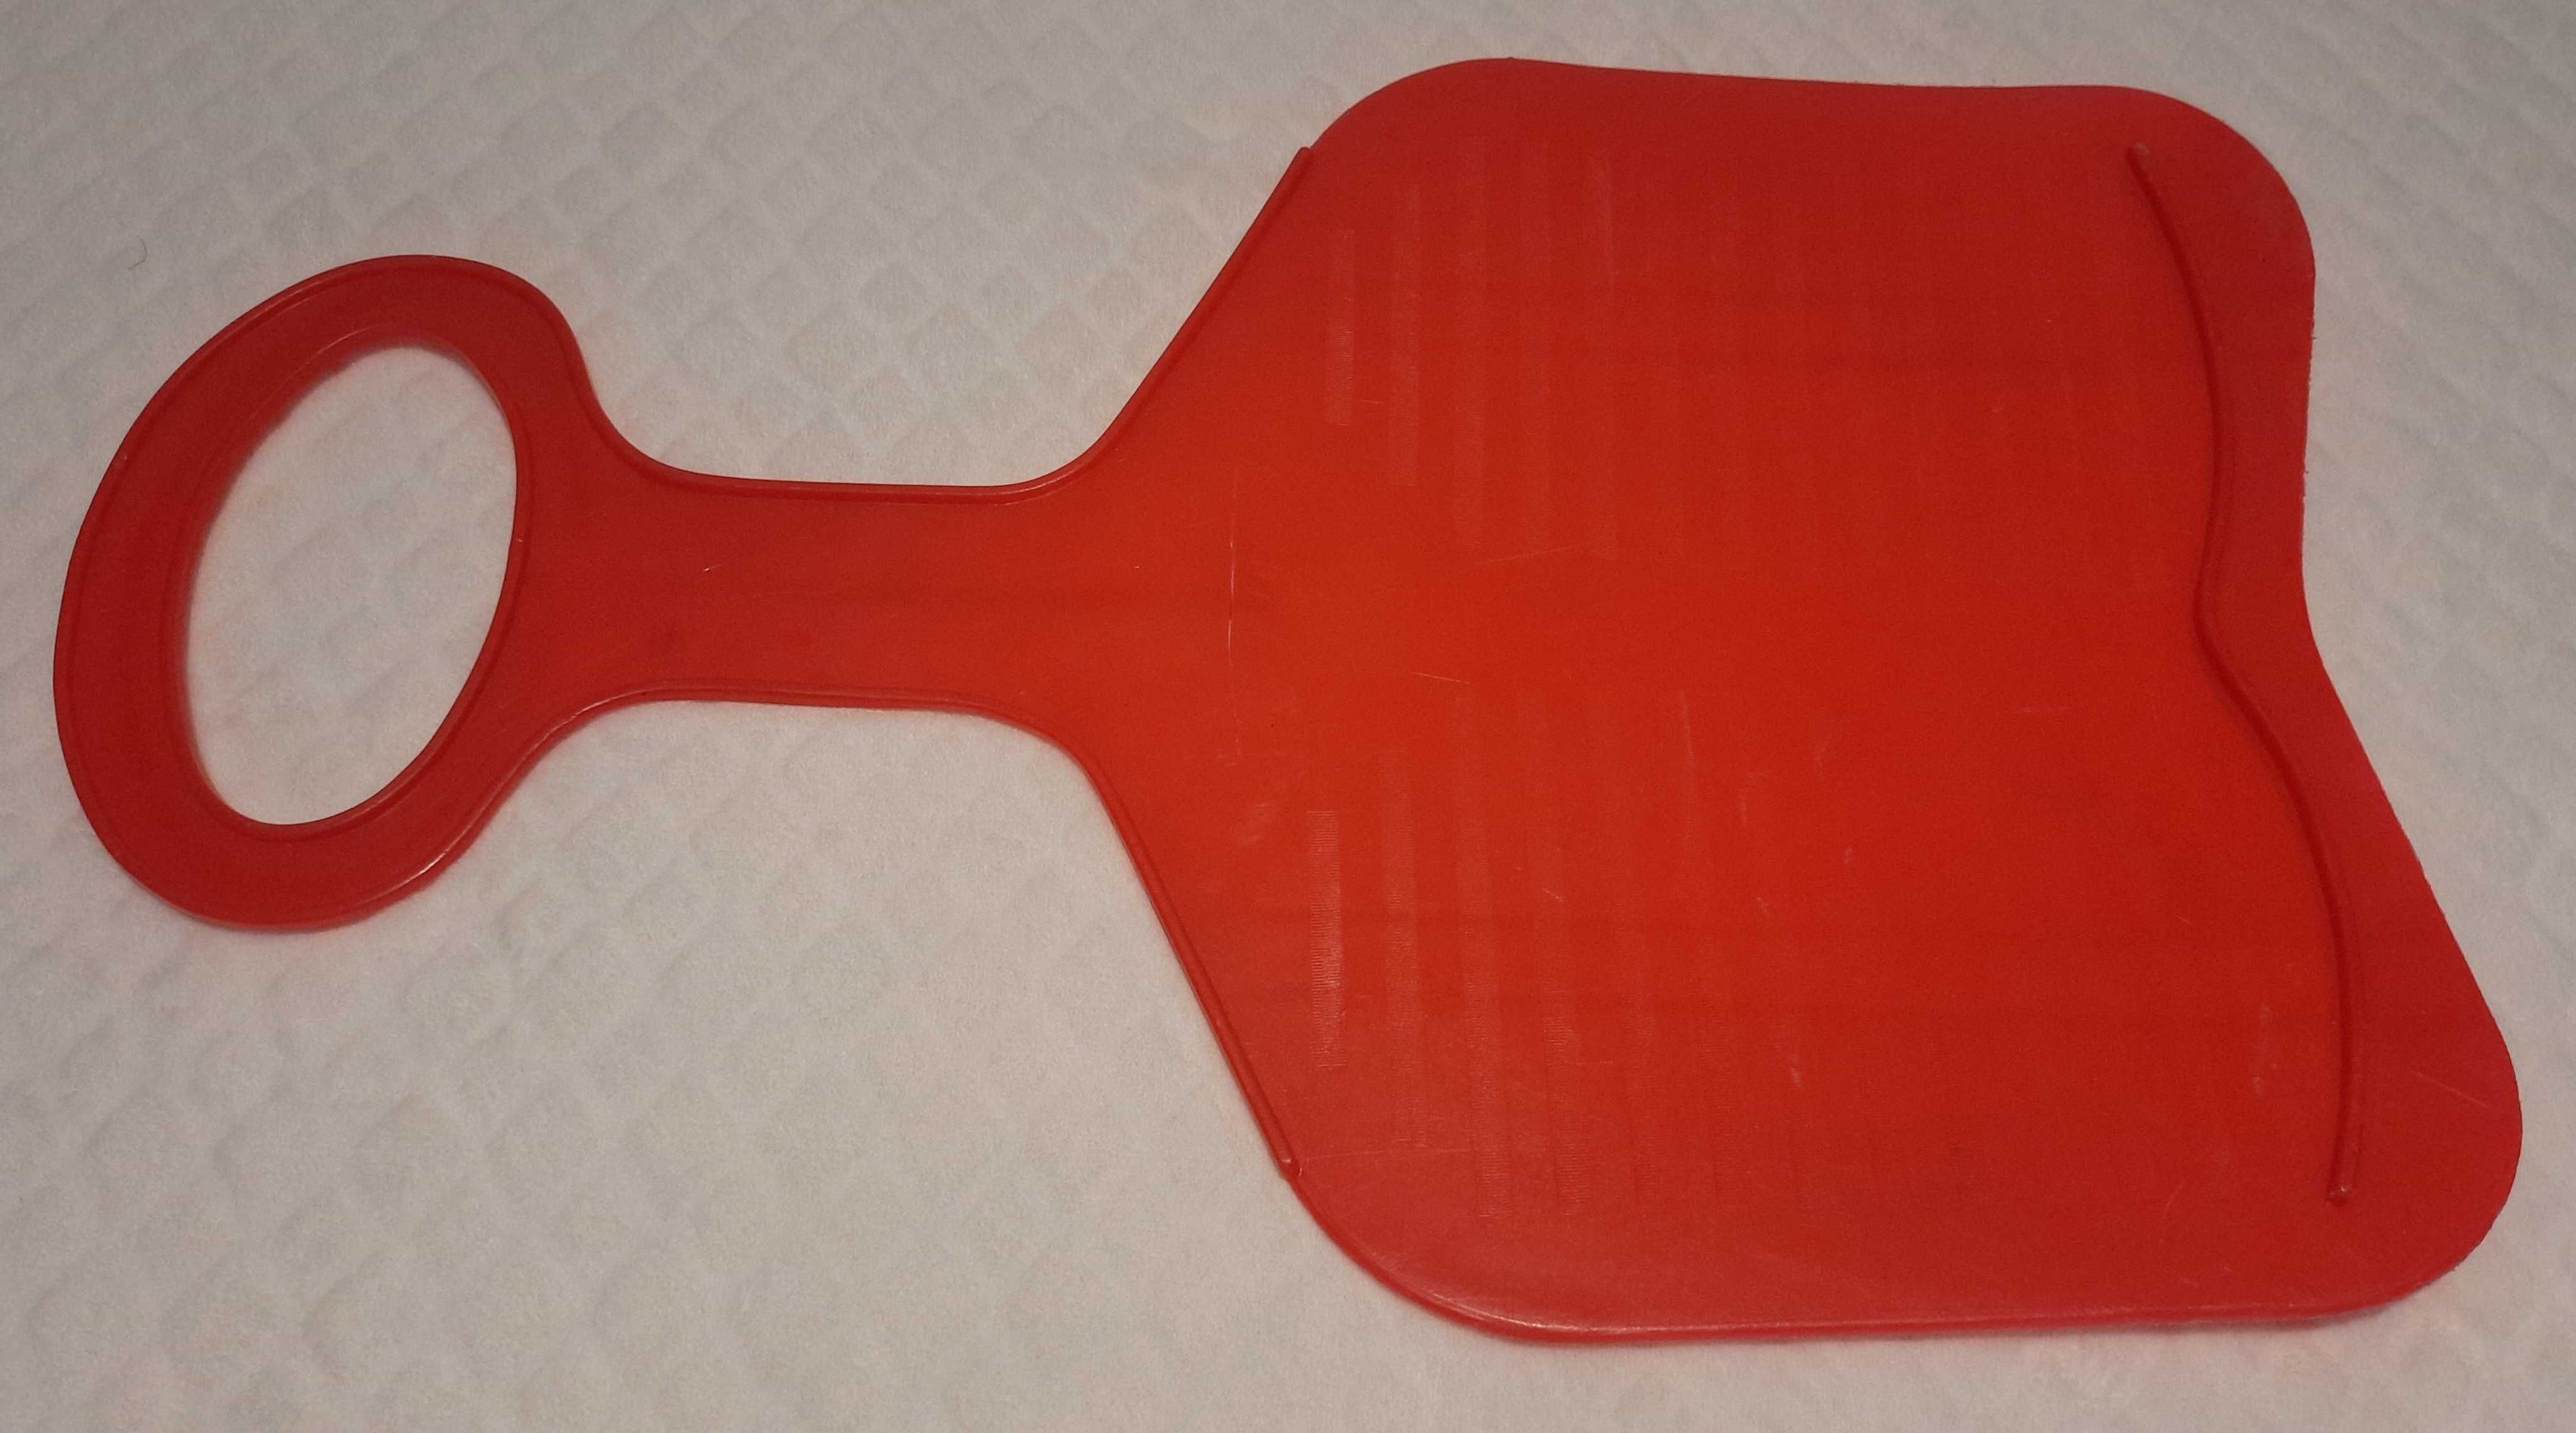 Ślizg zjazdowy, dupolot, czerwony, 35cm x 55cm (Zabawka, uszkodzona)